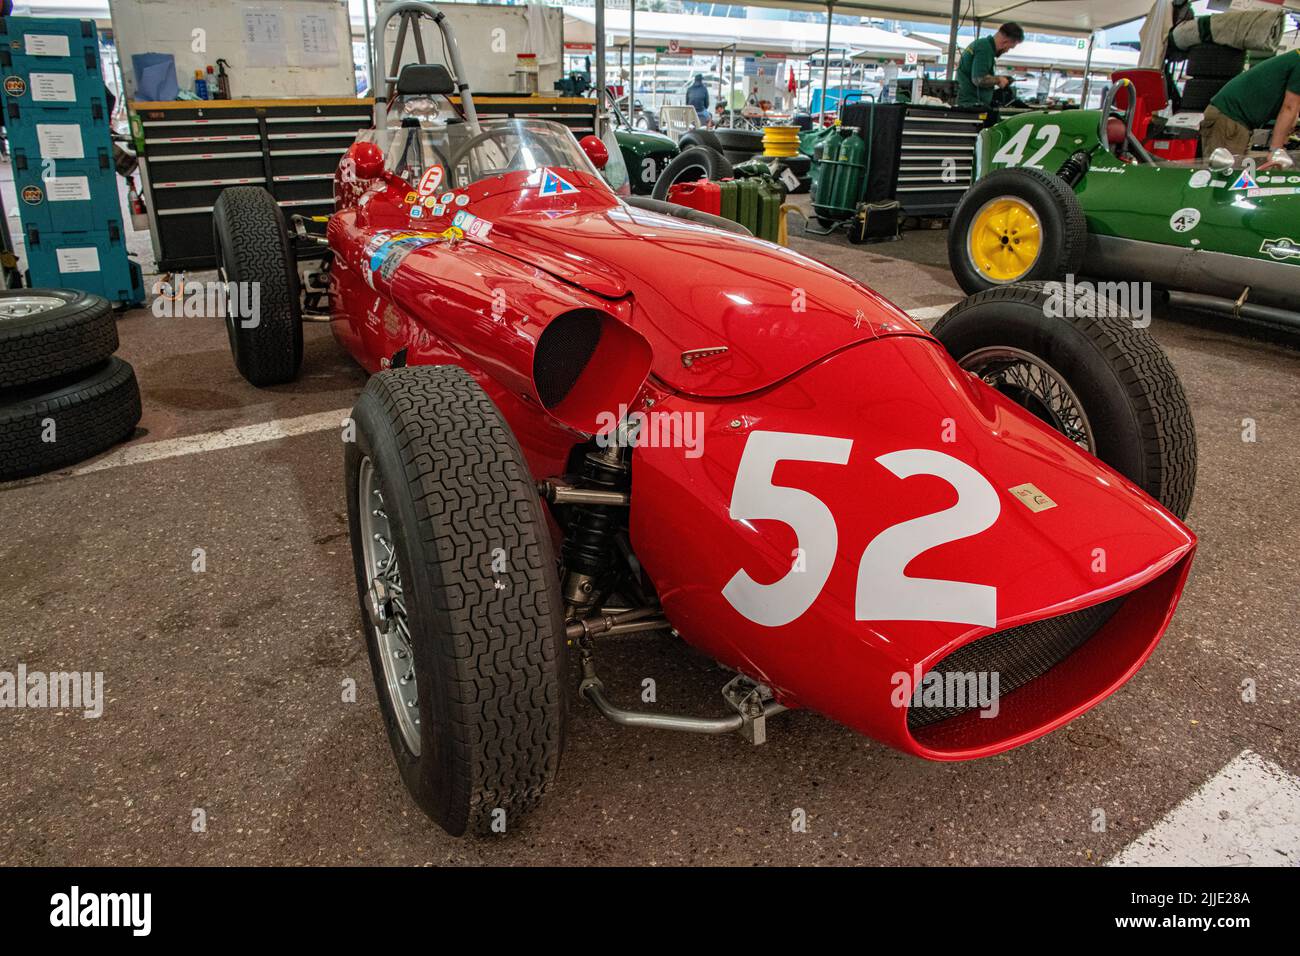 A 1950's Ferrari single seater in the pits of the historic Grand Prix in Monaco Stock Photo